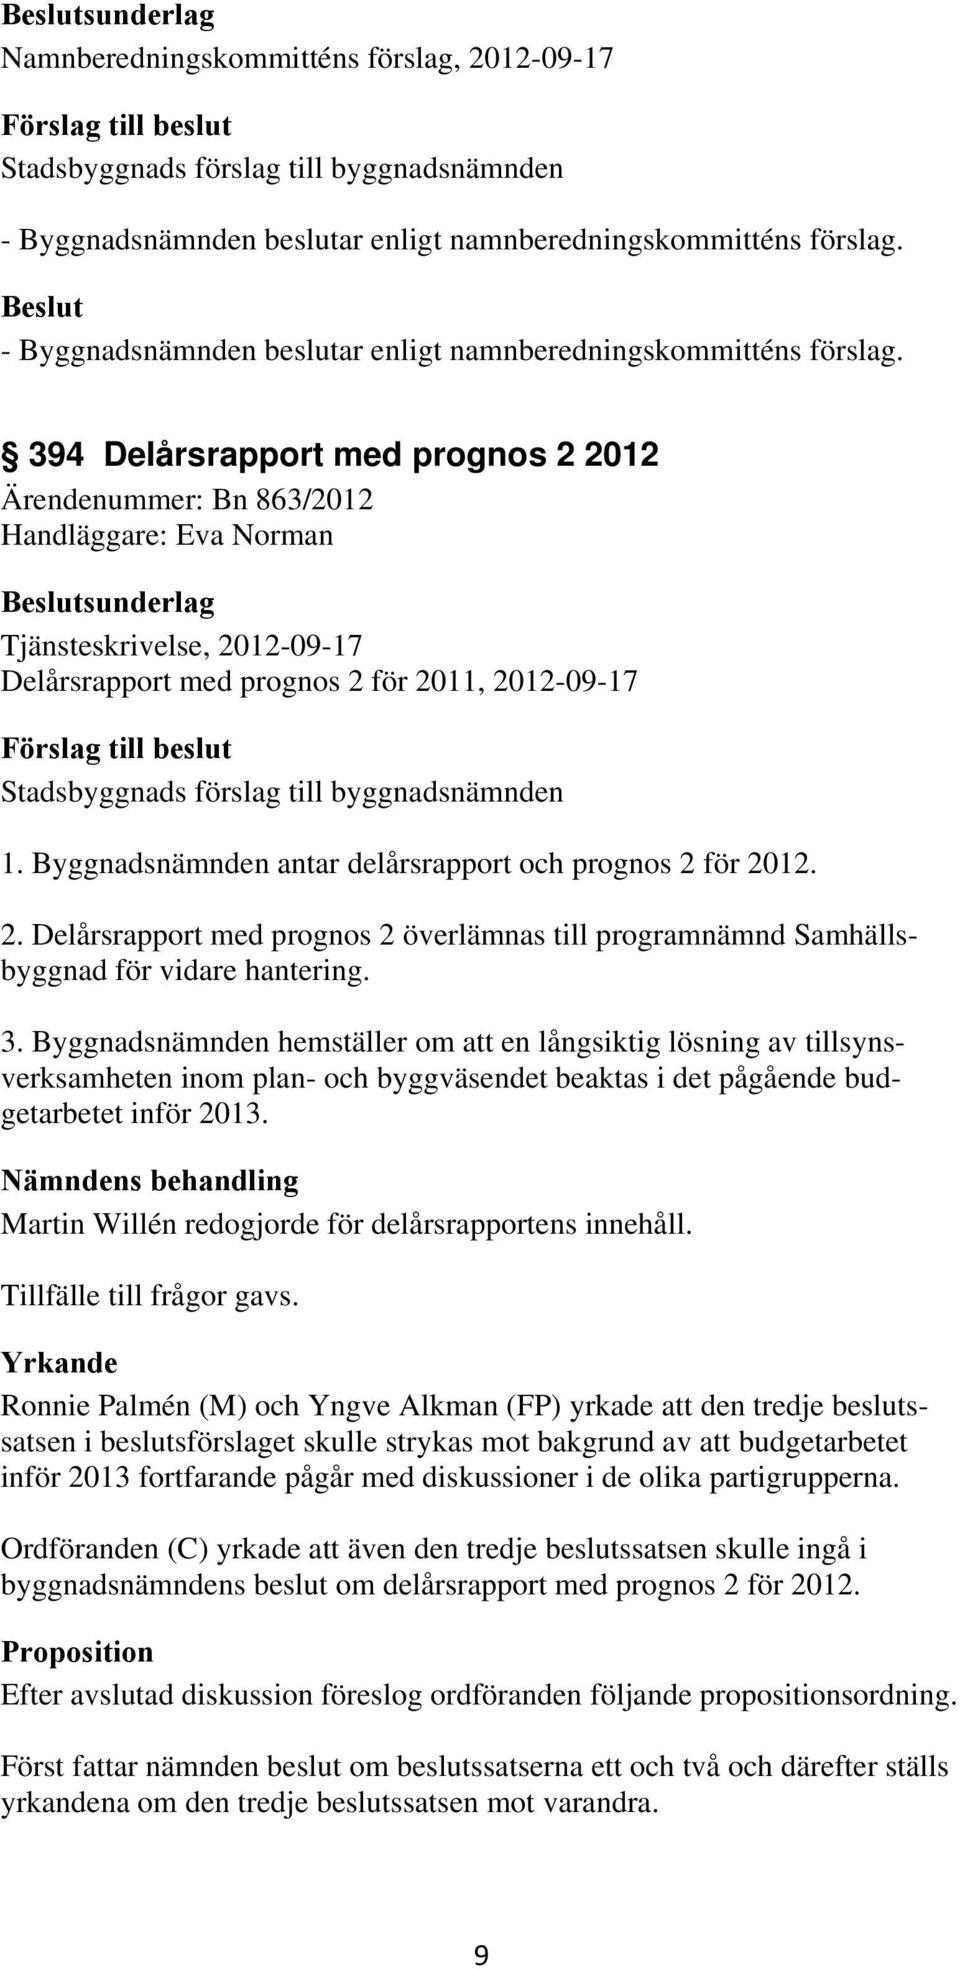 394 Delårsrapport med prognos 2 2012 Ärendenummer: Bn 863/2012 Handläggare: Eva Norman sunderlag Tjänsteskrivelse, 2012-09-17 Delårsrapport med prognos 2 för 2011, 2012-09-17 1.